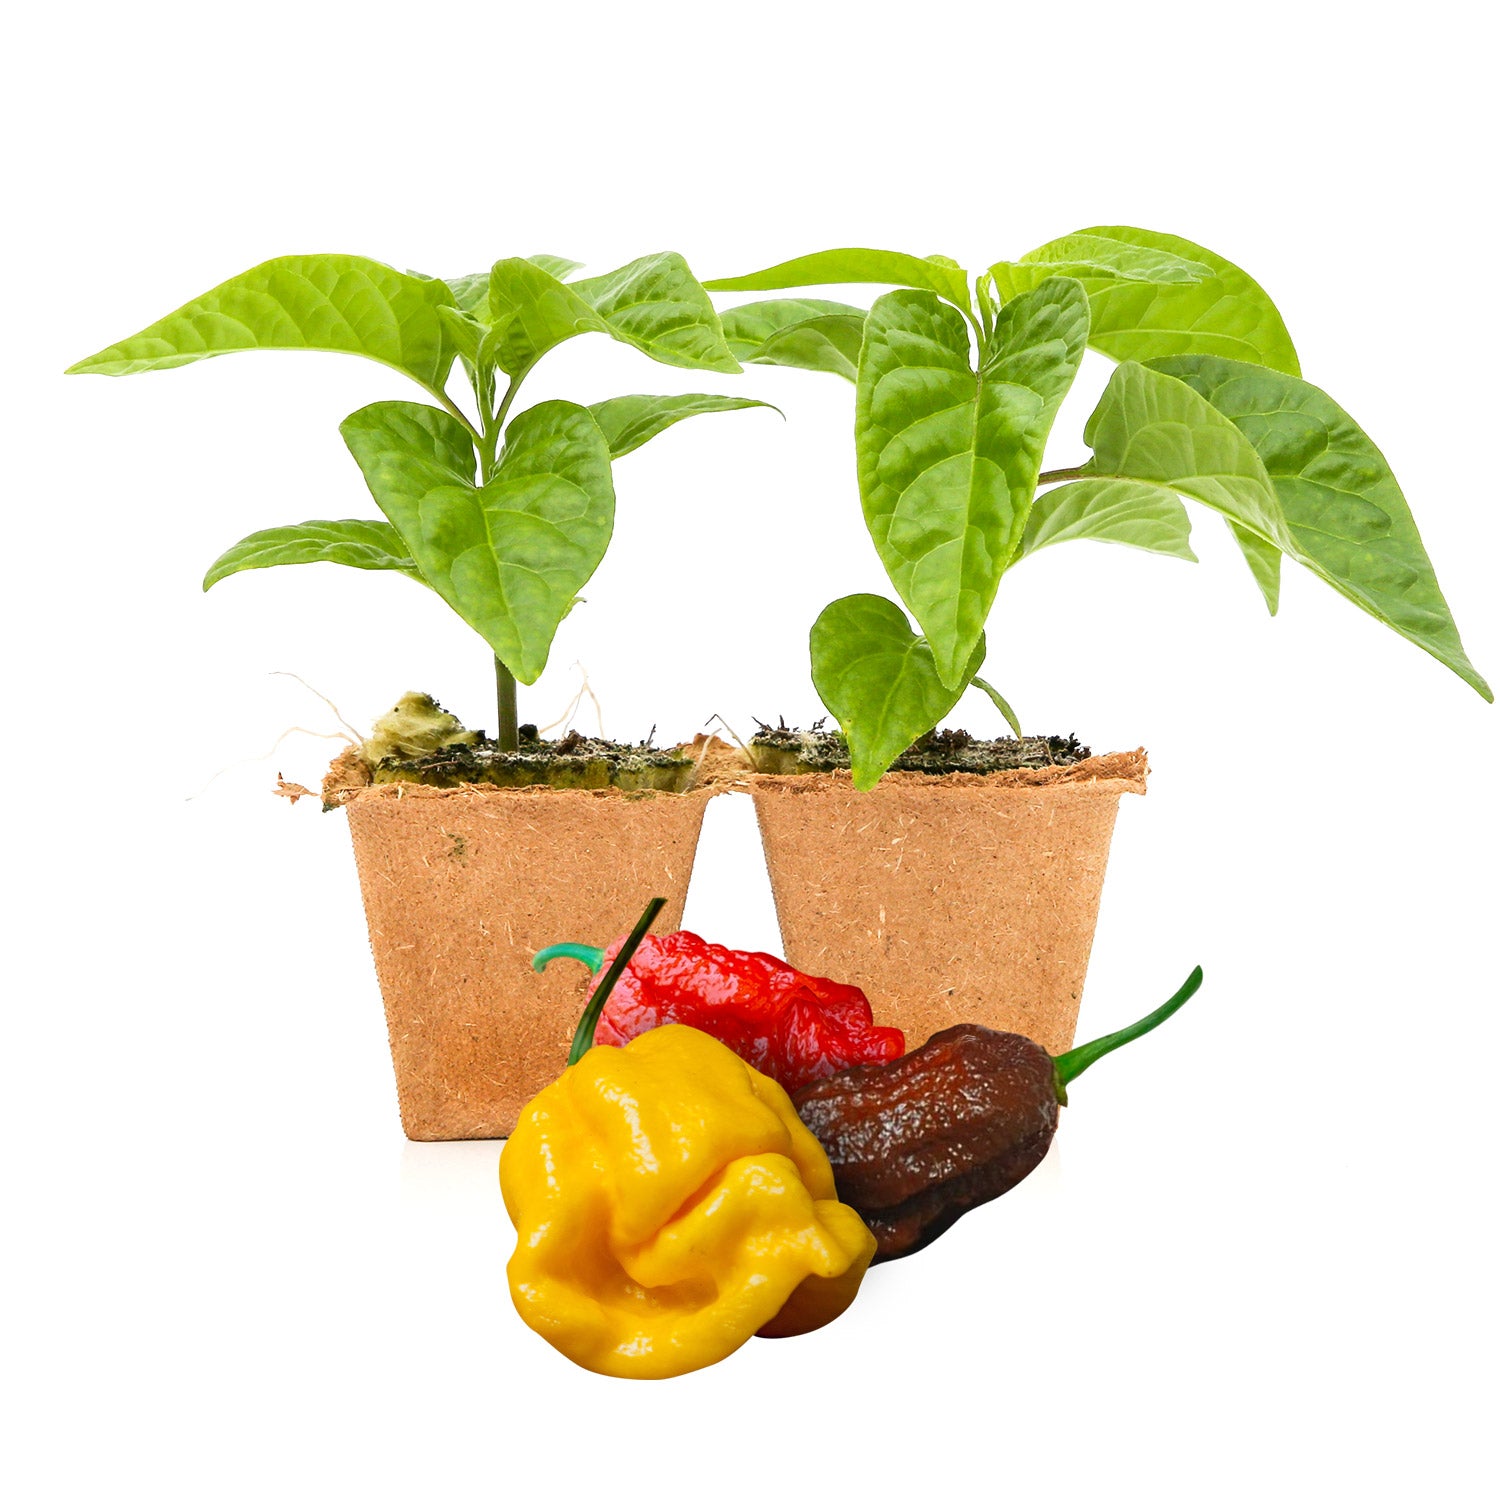 Pepper Joe's Rainbow Big Mama pepper plants for sale